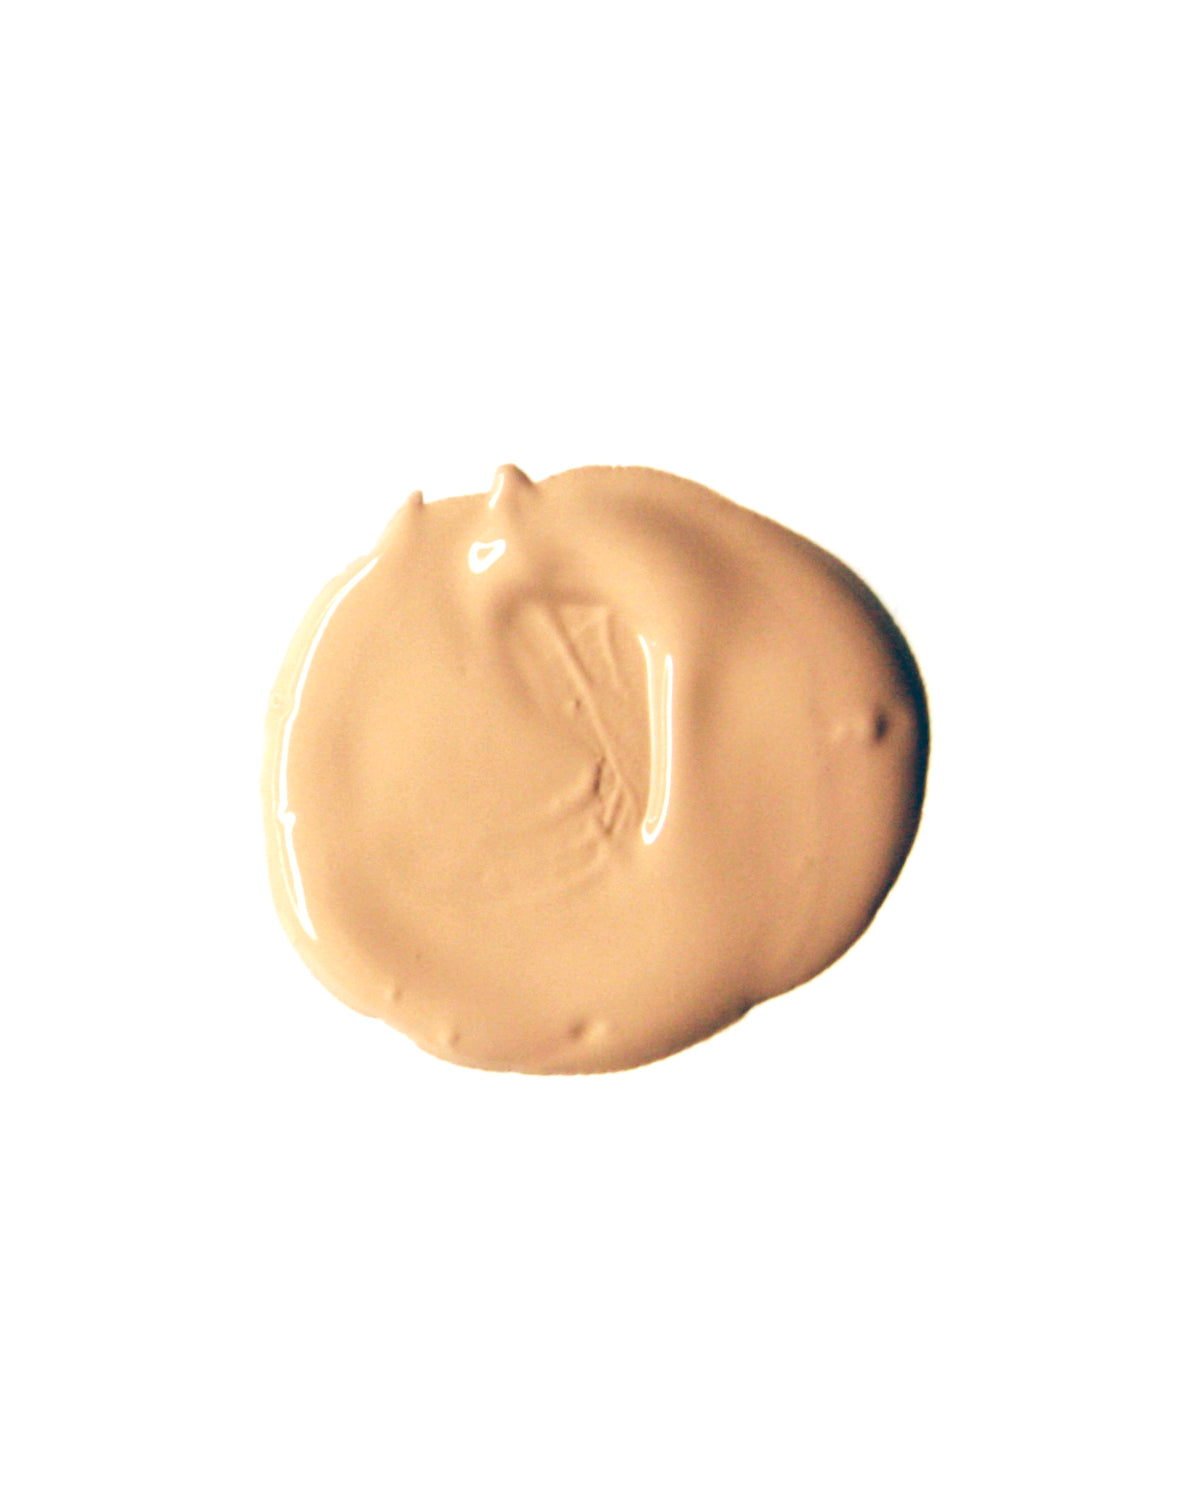 MKL - LIQUID POWDER LUXURY. Innovativo fondotinta liquido dall’effetto matt a lunga tenuta, resiste al calore e all’umidità. La sua formula ricca di acido ialuronico fa risultare luminoso e fresco l’incarnato, i pori si attenuano uniformandone la texture. Cookie